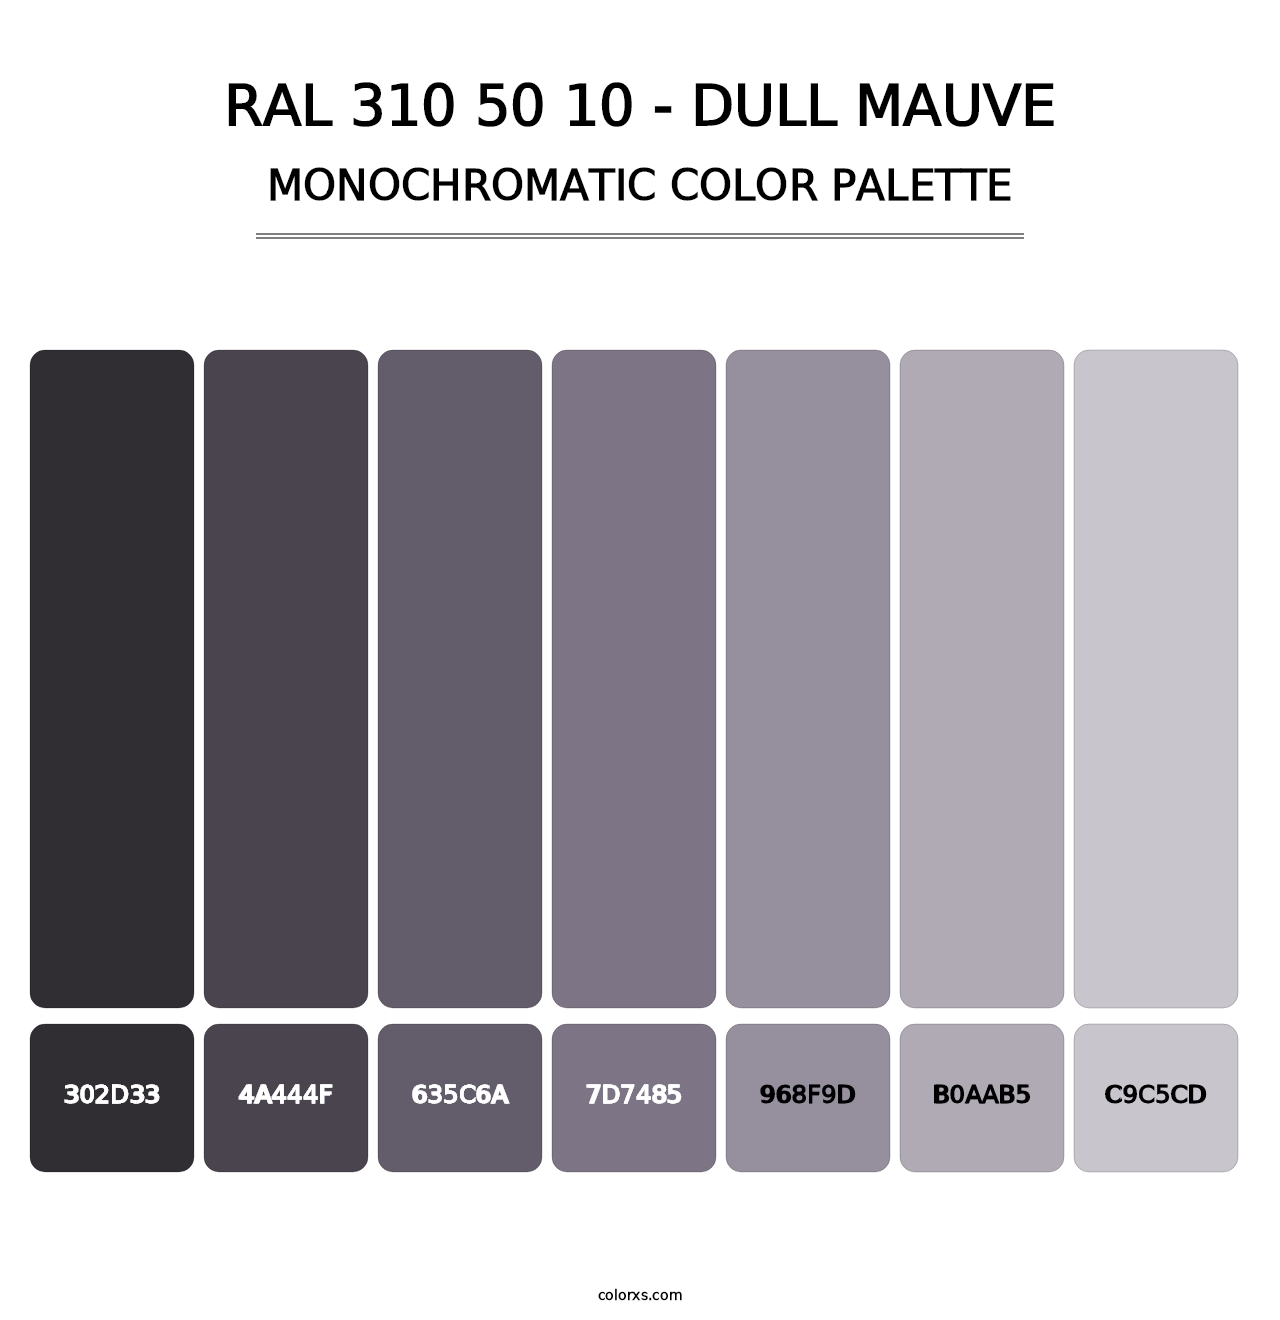 RAL 310 50 10 - Dull Mauve - Monochromatic Color Palette